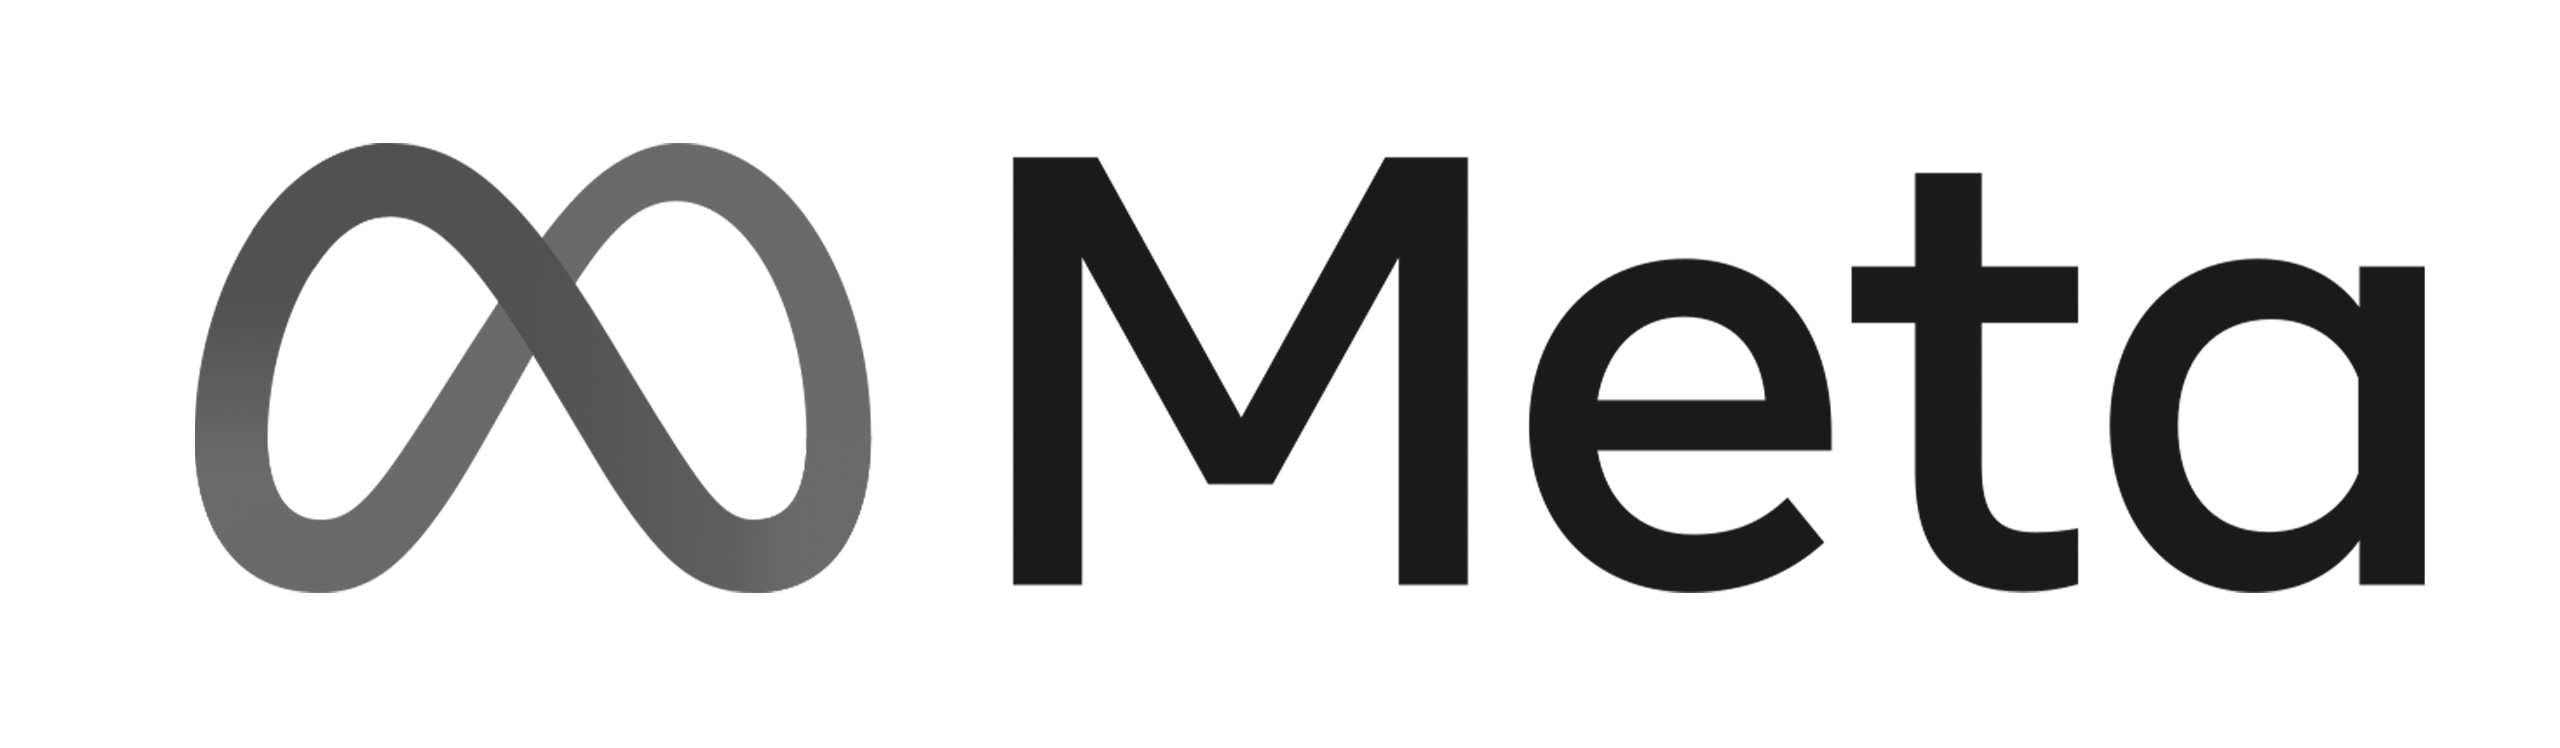 meta-logo-bw